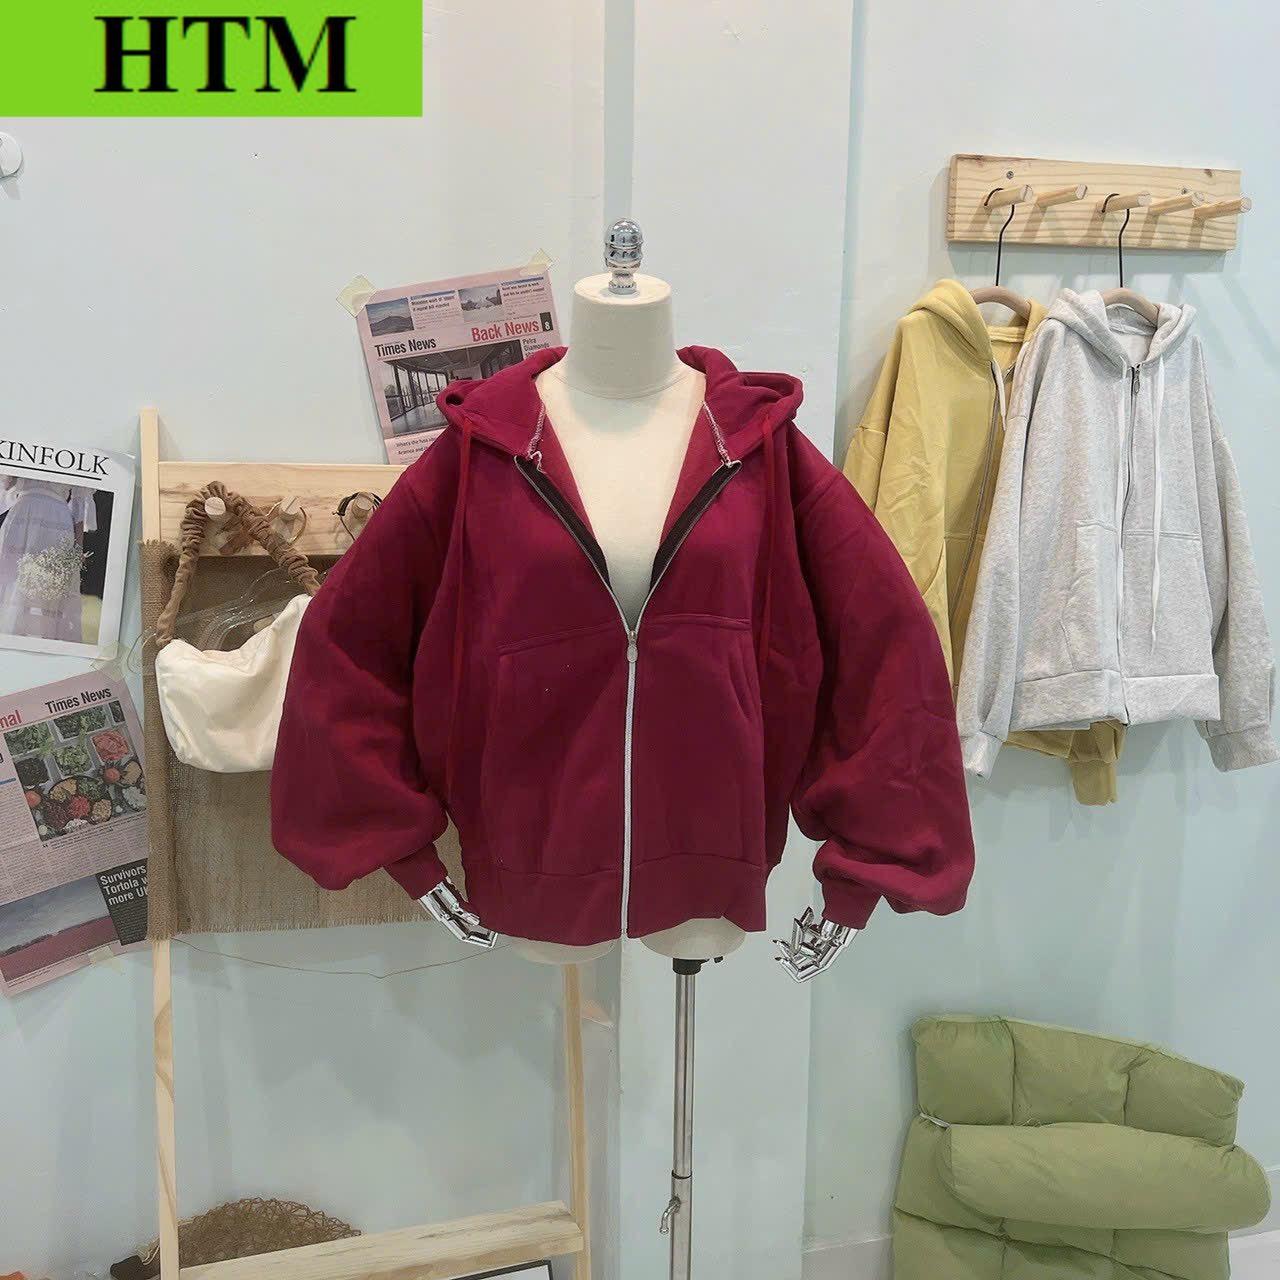 [FREESHIP] Áo Khoác Hoodie Nữ Nỉ Form Rộng Cánh Tay Phối THeo Phong Cách Hàn Quốc Chất Vải Siêu Dày Dặn Hàng Hot Trend HTM FASHION - Red